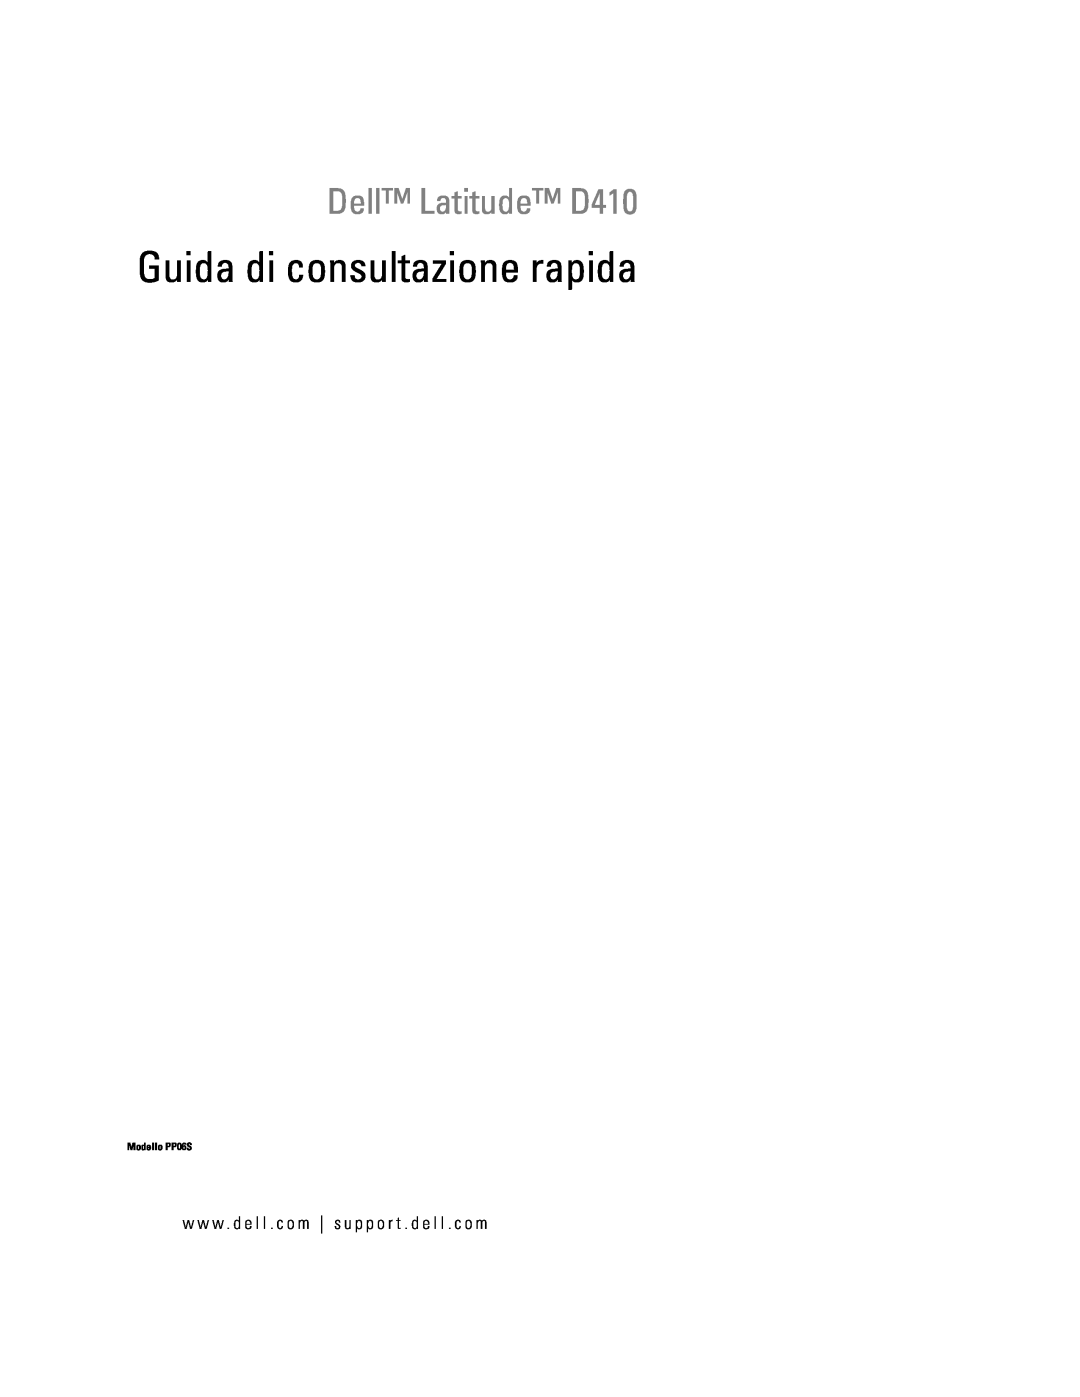 Dell manual Guida di consultazione rapida, Dell Latitude D410, Modello PP06S 